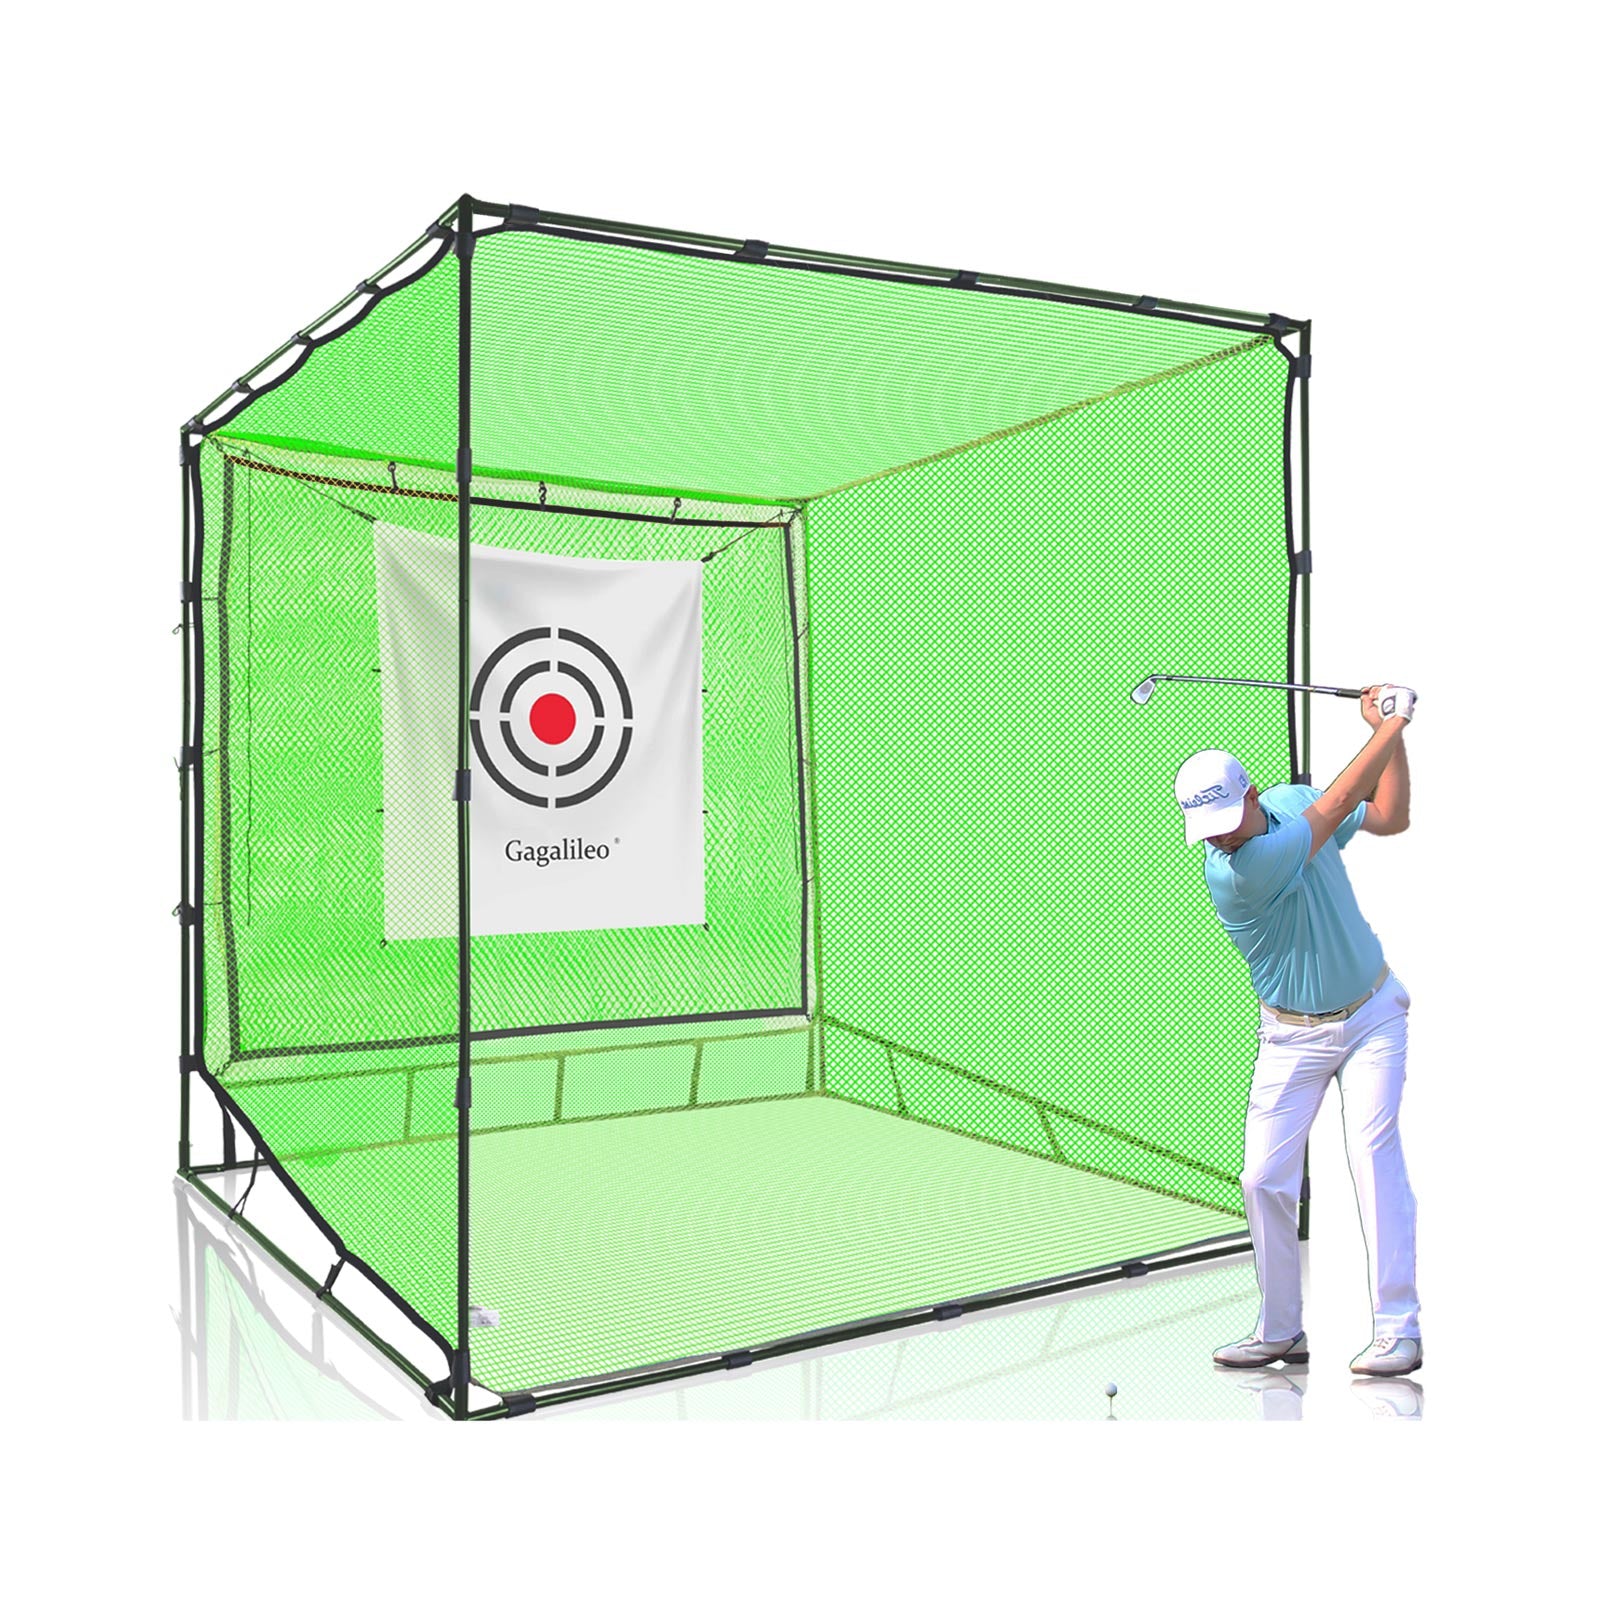 Gagalileo Golf-Schlagnetzkäfig/Hochschlagfestes Netz mit doppelter Rücklaufsperre/10 Fuß x 10 Fuß x 10 Fuß